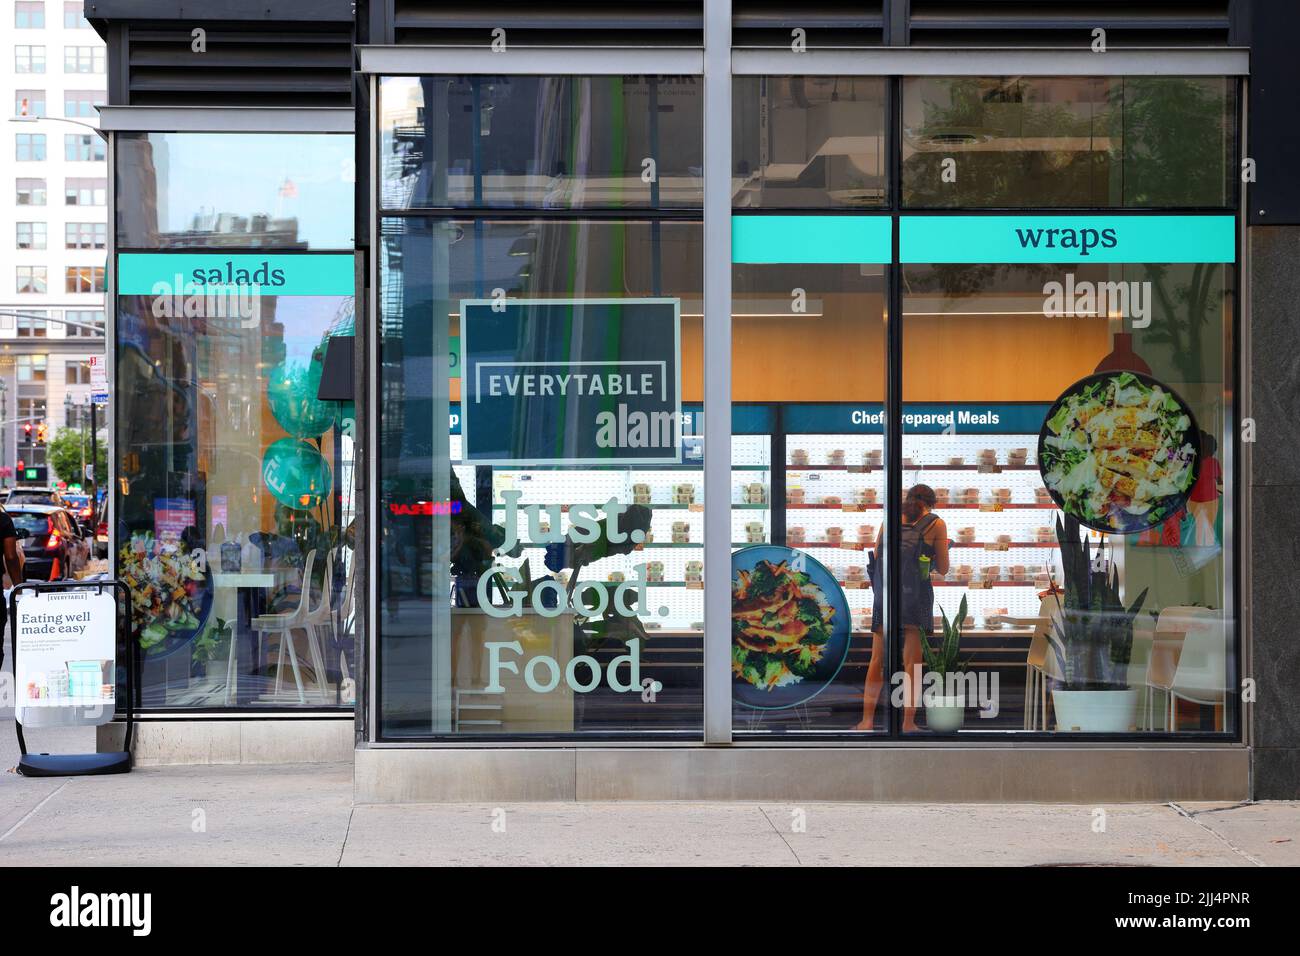 Everytable, 364 8. Ave, New York, NYC Schaufenster Foto von einem Grab and go zubereiteten Essen Service mit einer sozialen Mission Stockfoto